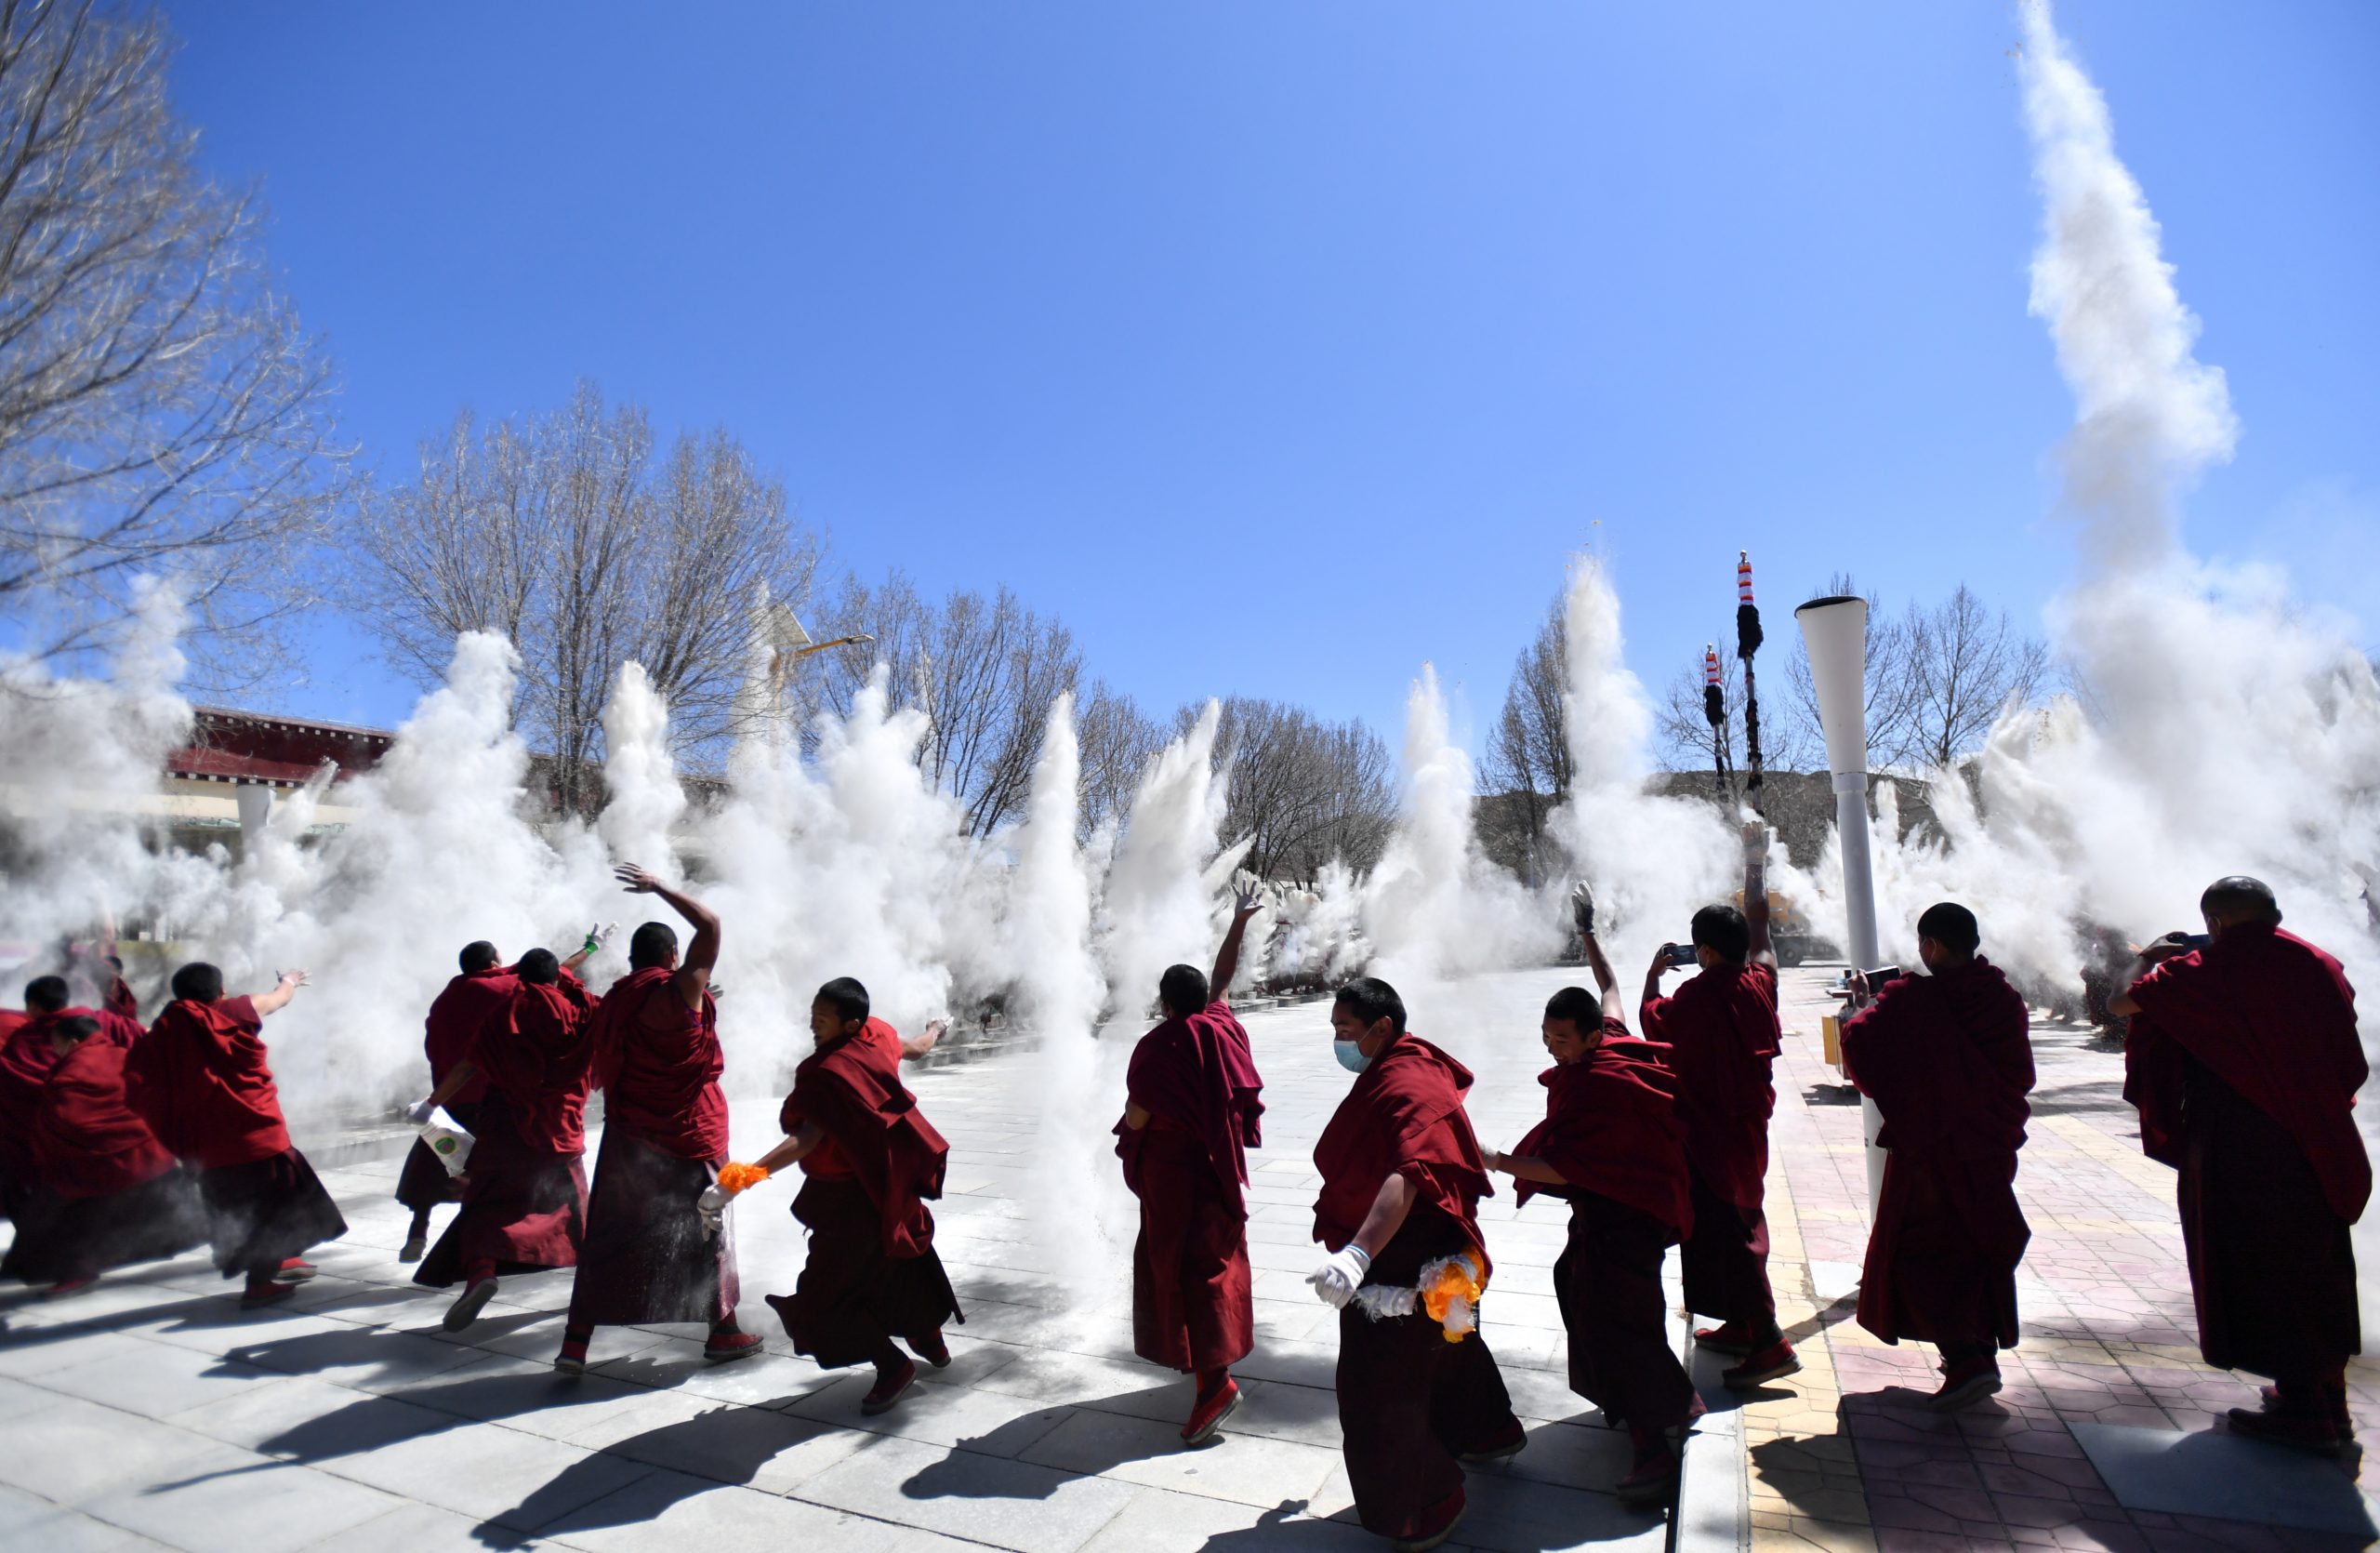     西藏扎什伦布寺立经杆 祈愿经幡满满祝福语